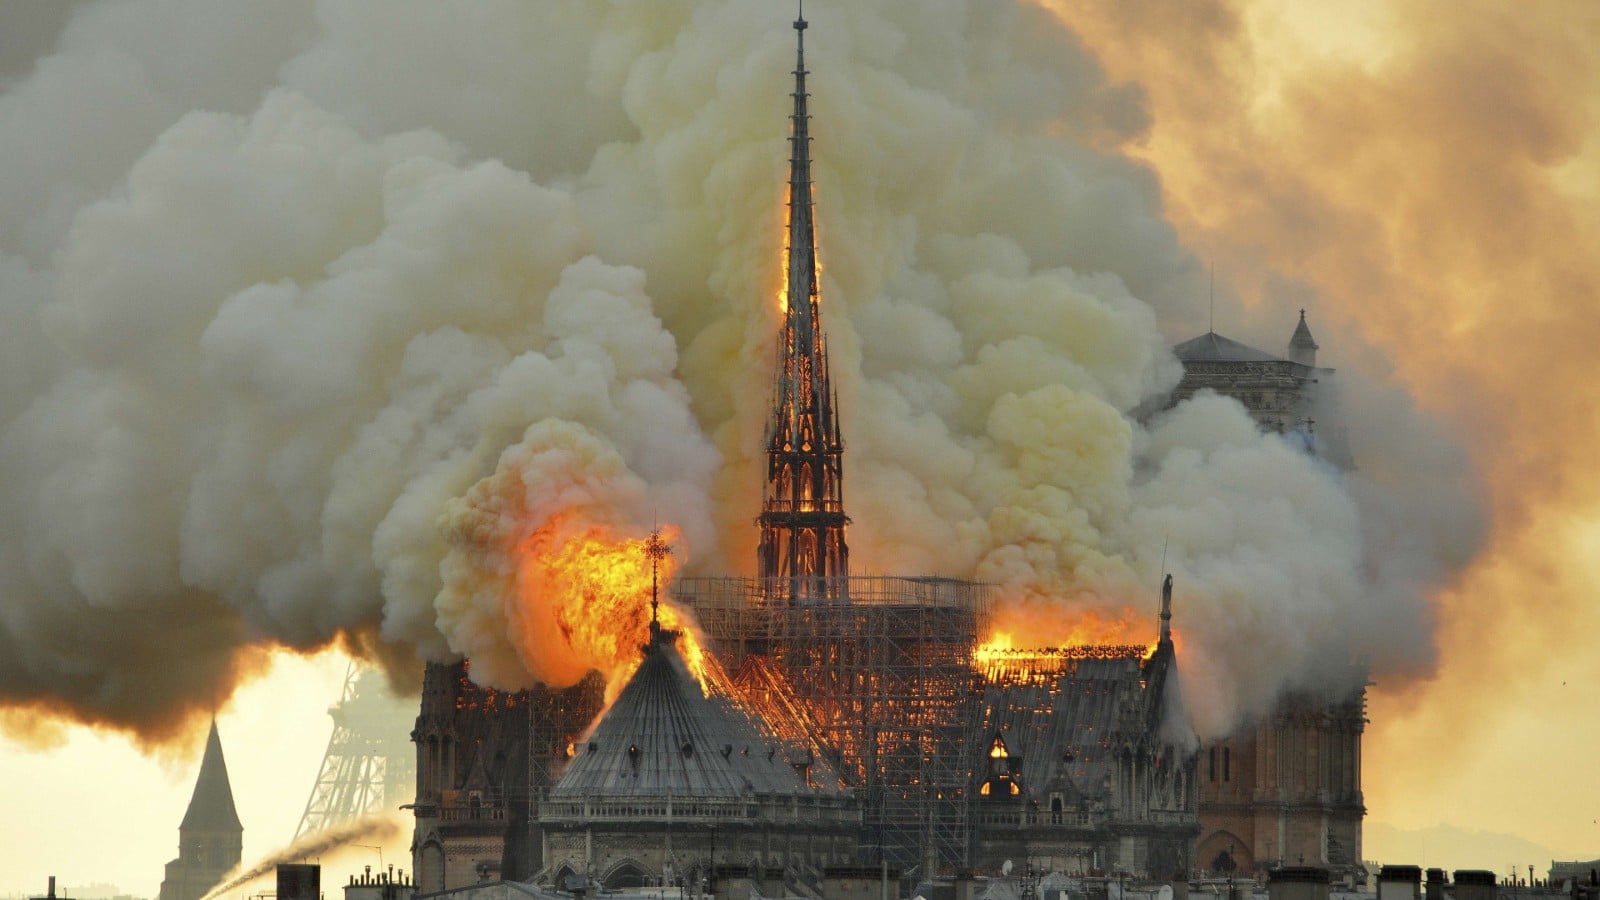 Notre-Dame de Paris le 16 avril 2019.
Auteurs  : Thierry Mallet/AP/SIPA
Numéro de reportage  : AP22325038_000205